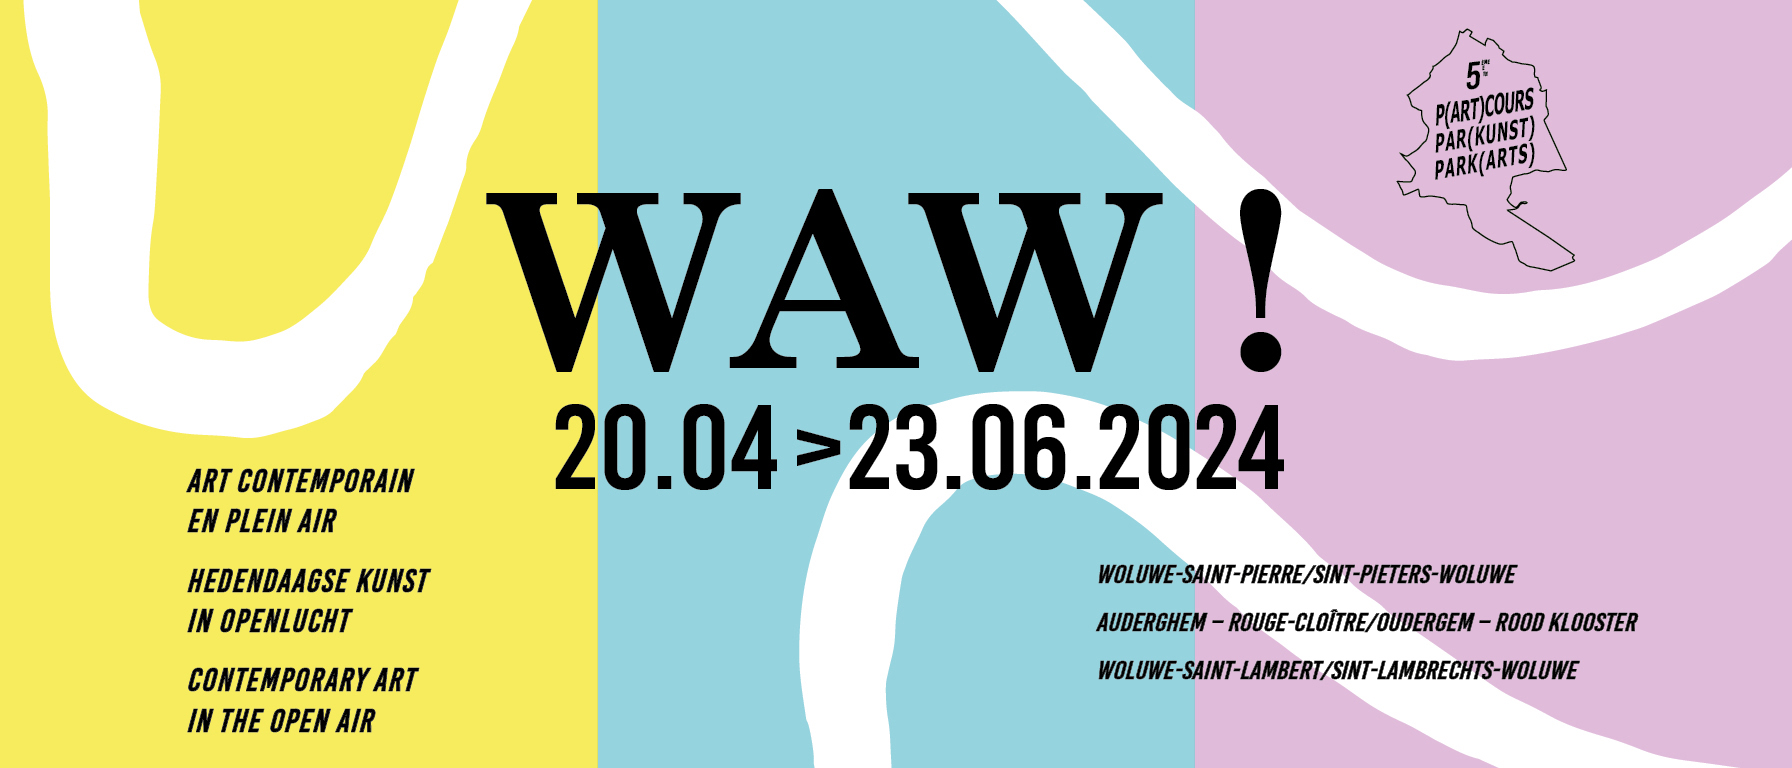 Rondleiding WAW ! Par(Kunst) 2024